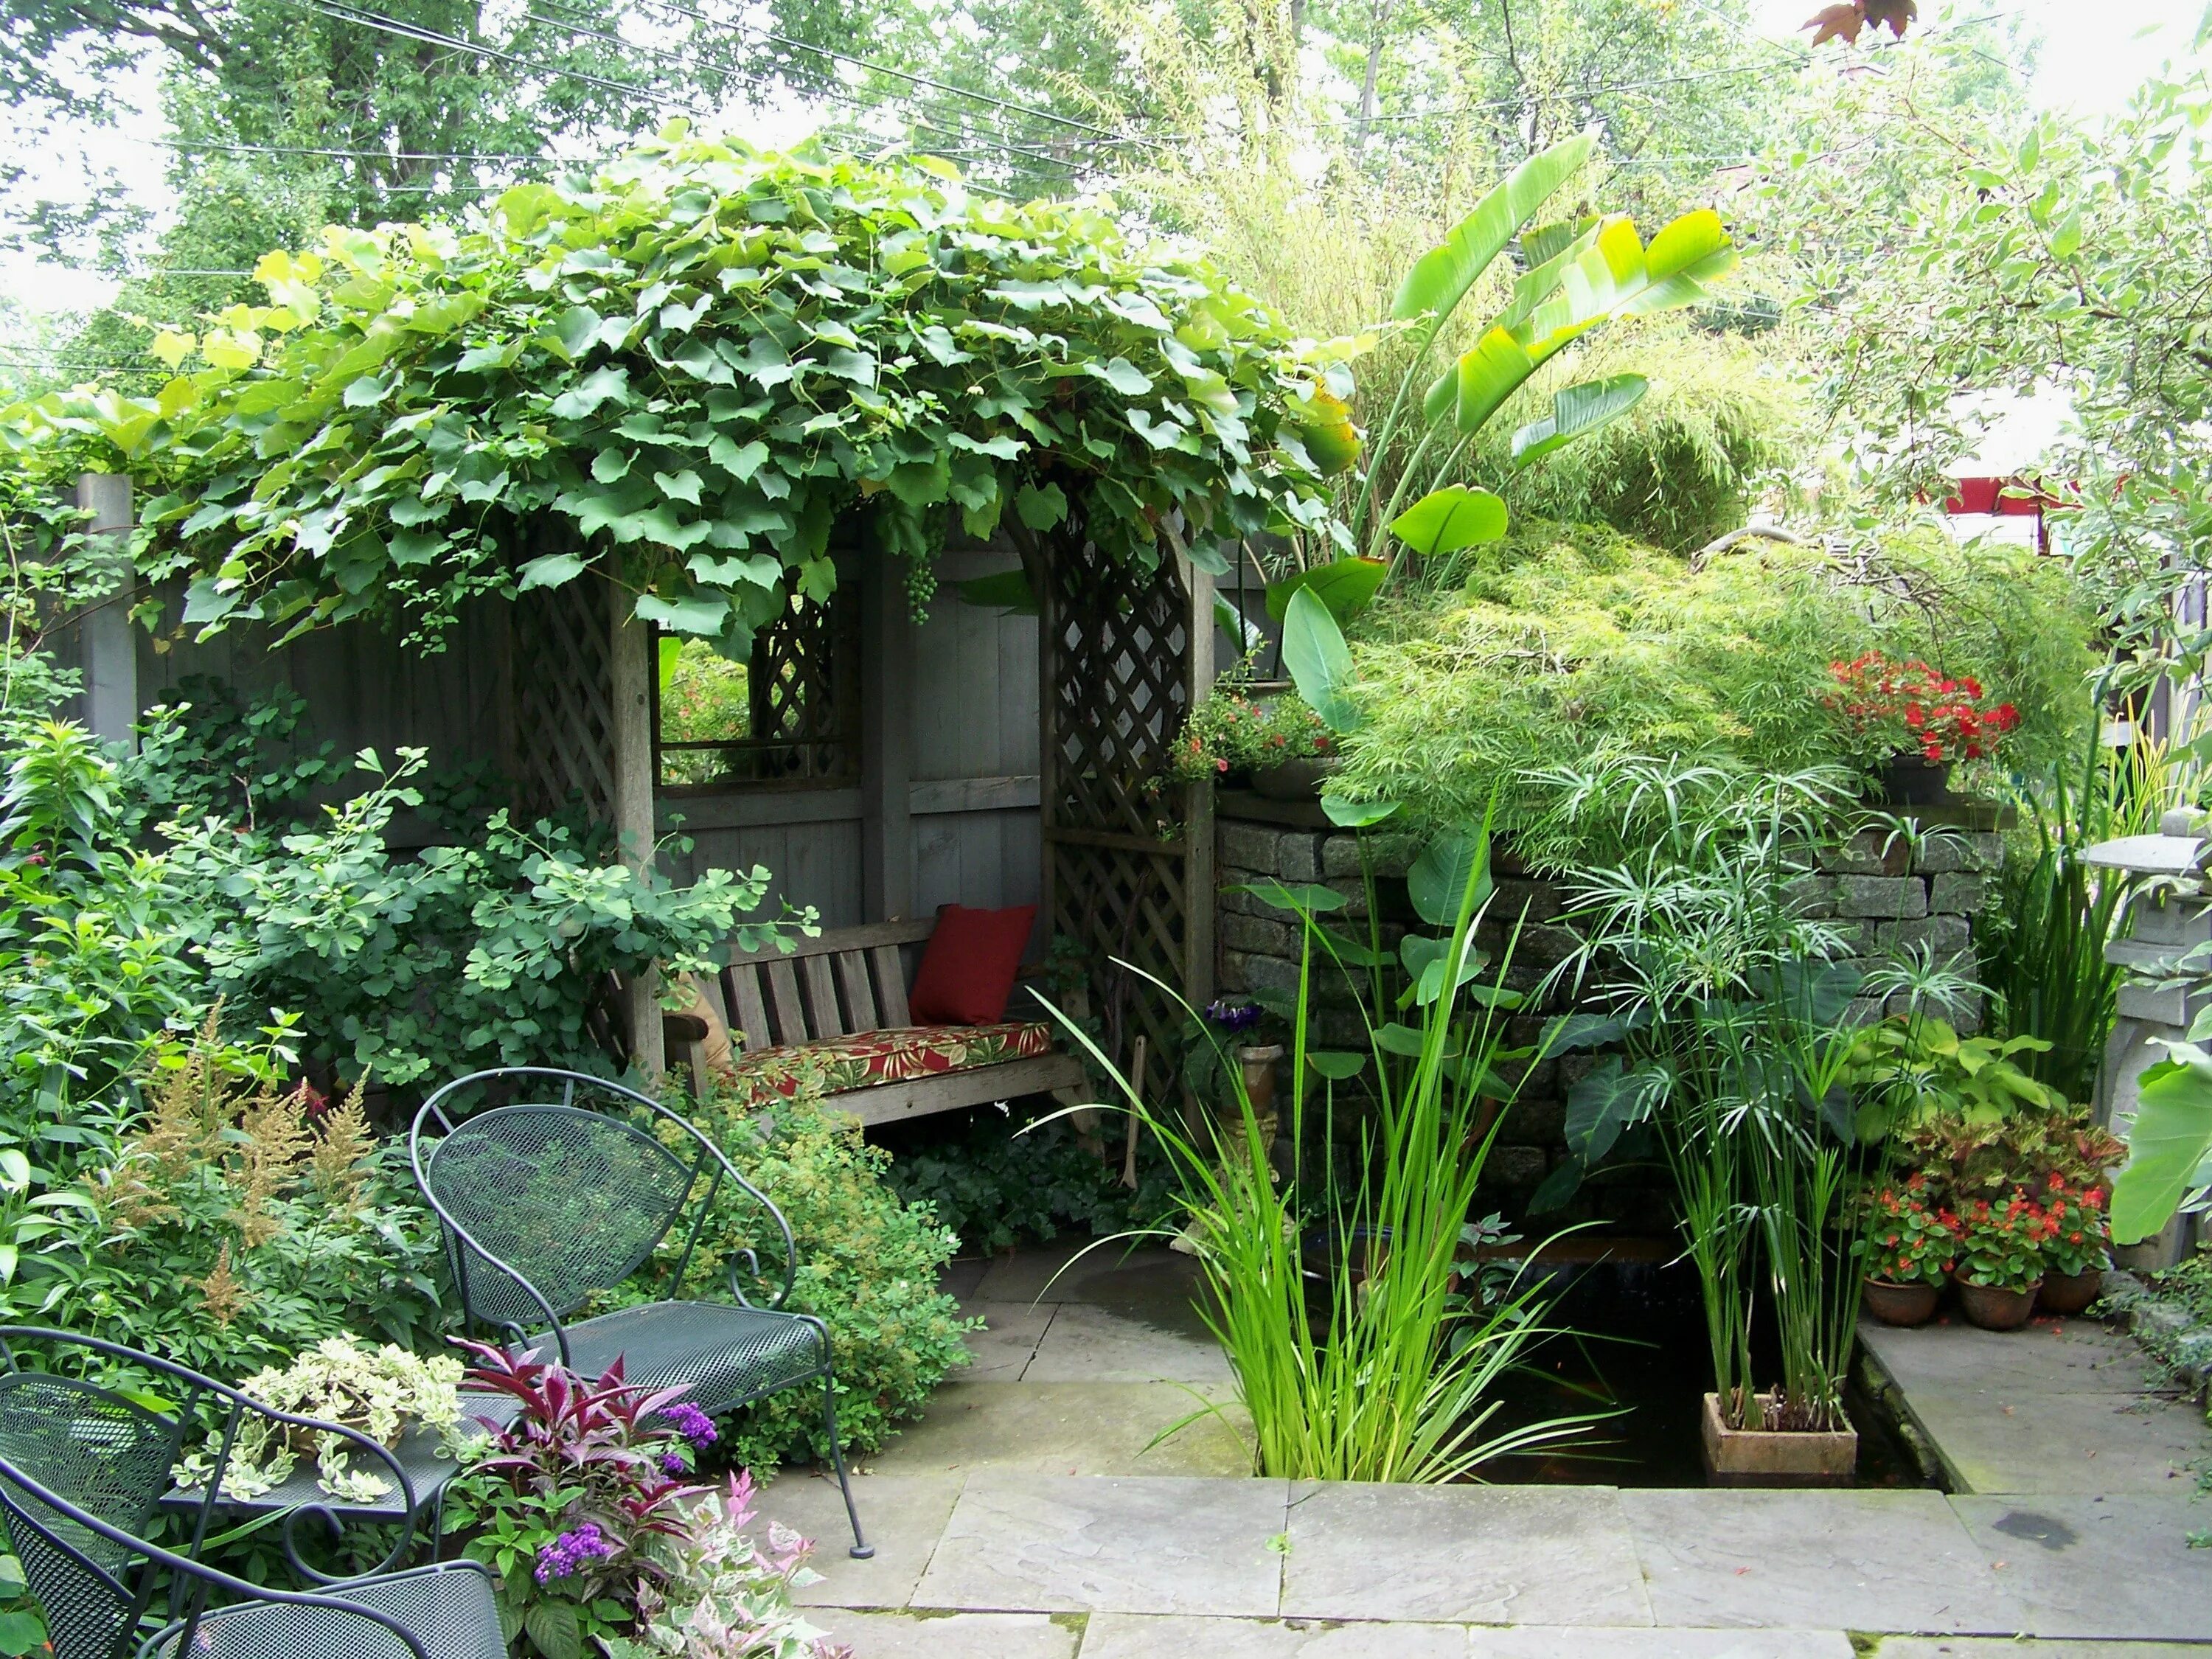 Фото украшенных дач. Уютный уголок в саду. Уютный уголок на даче. Зеленый уголок в саду. Укромный уголок в саду.